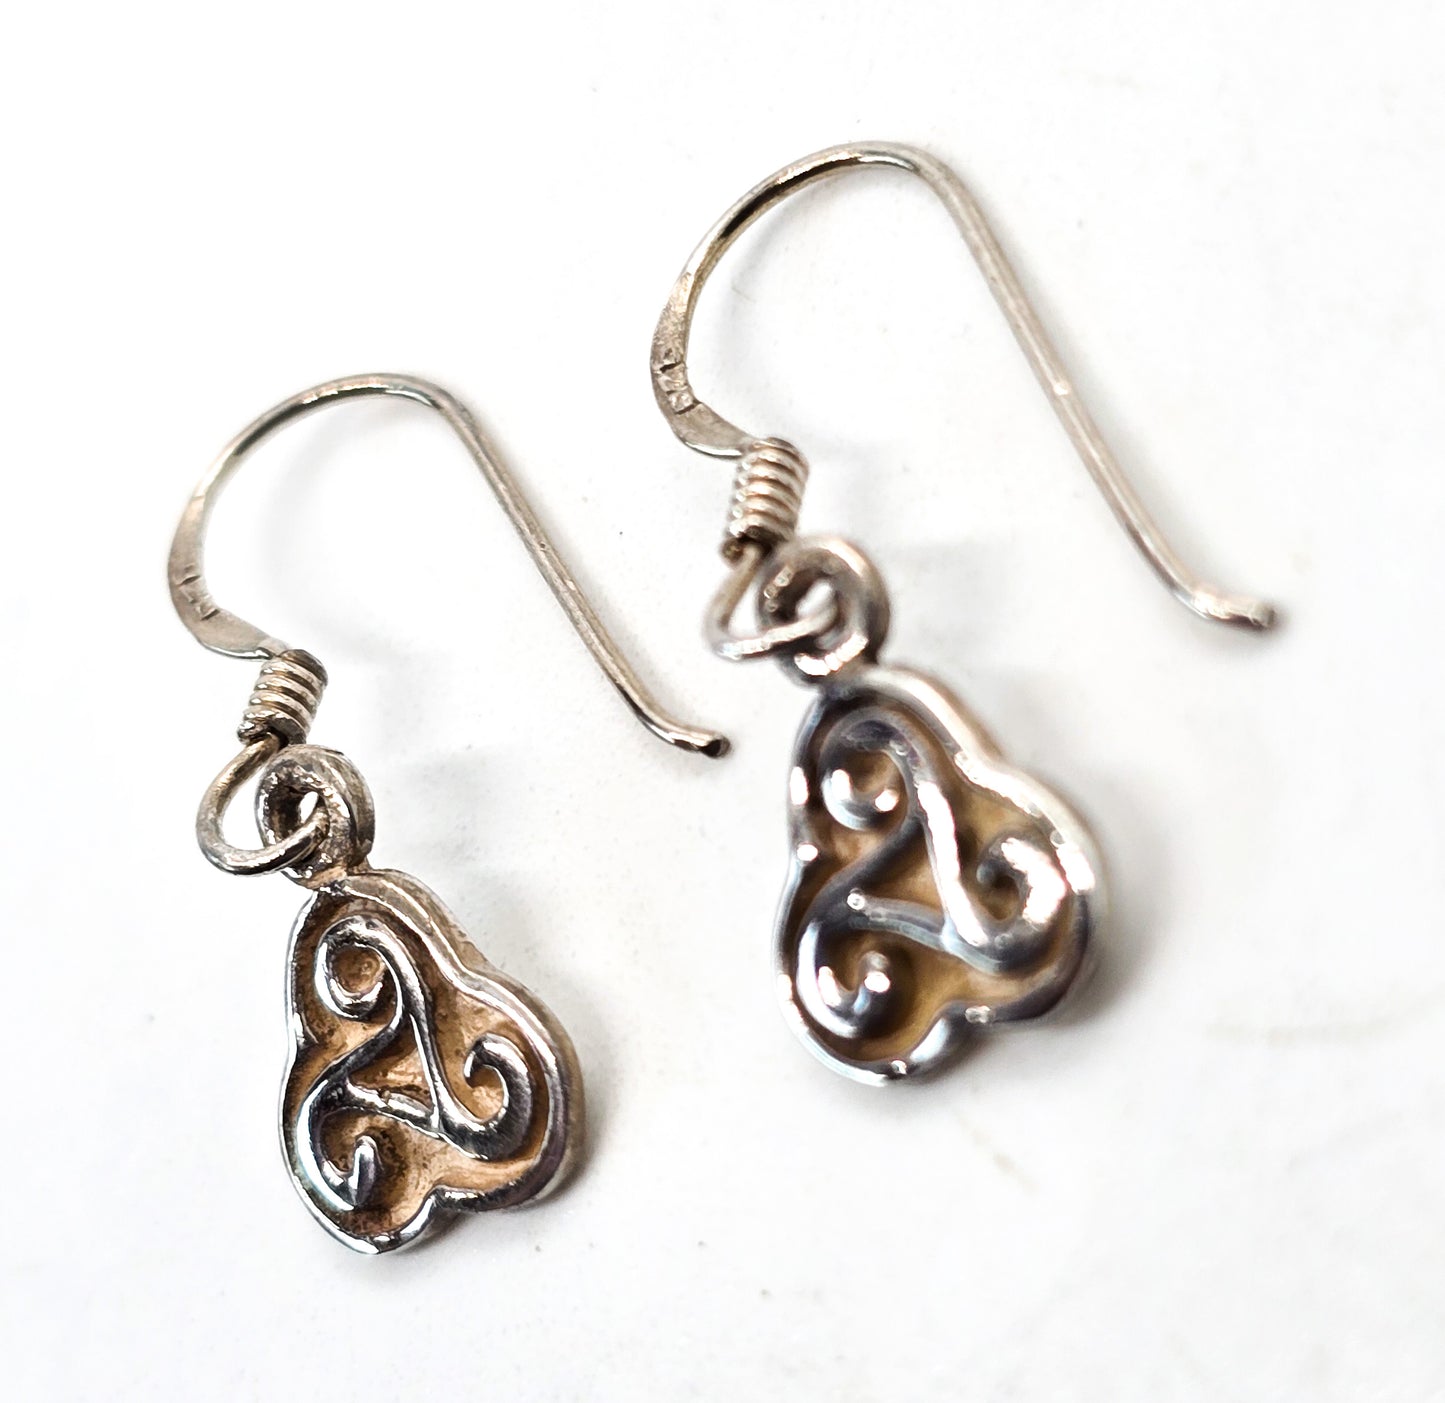 Triskele Trinity Knot Celtic vintage drop sterling silver earrings